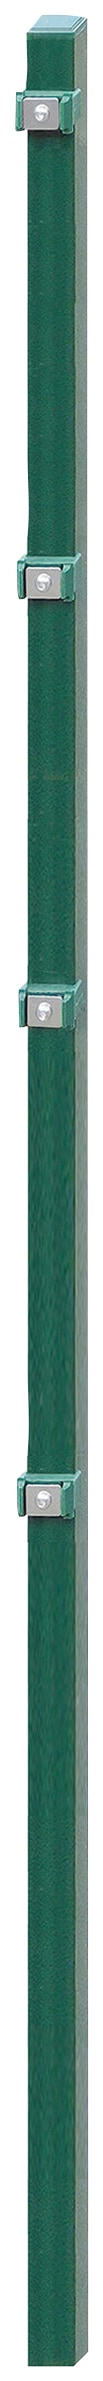 Zaunpfosten »ESSENTIAL 160«, 4x4x220 cm für Mattenhöhe 160 cm, zum Einbetonieren